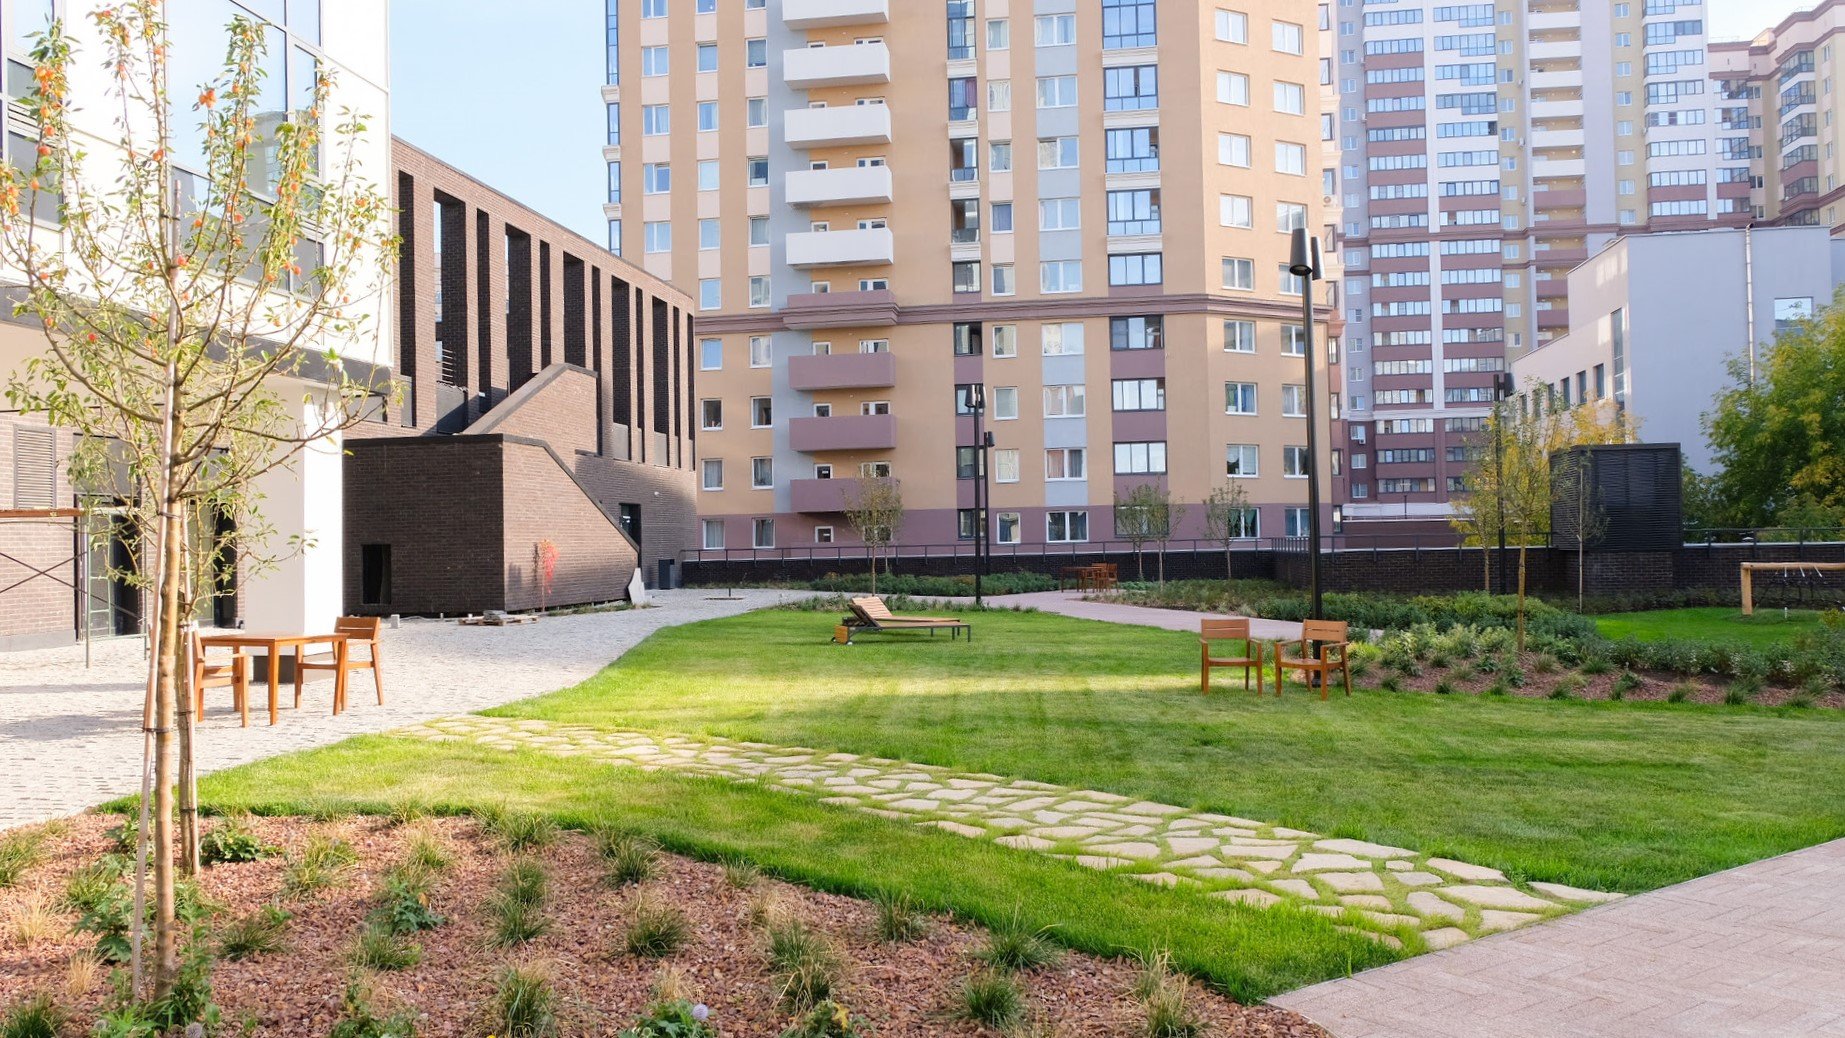 Компания «Атомстройкомплекс» представила девелоперам из других городов инновационные решения в строительстве жилых комплексов